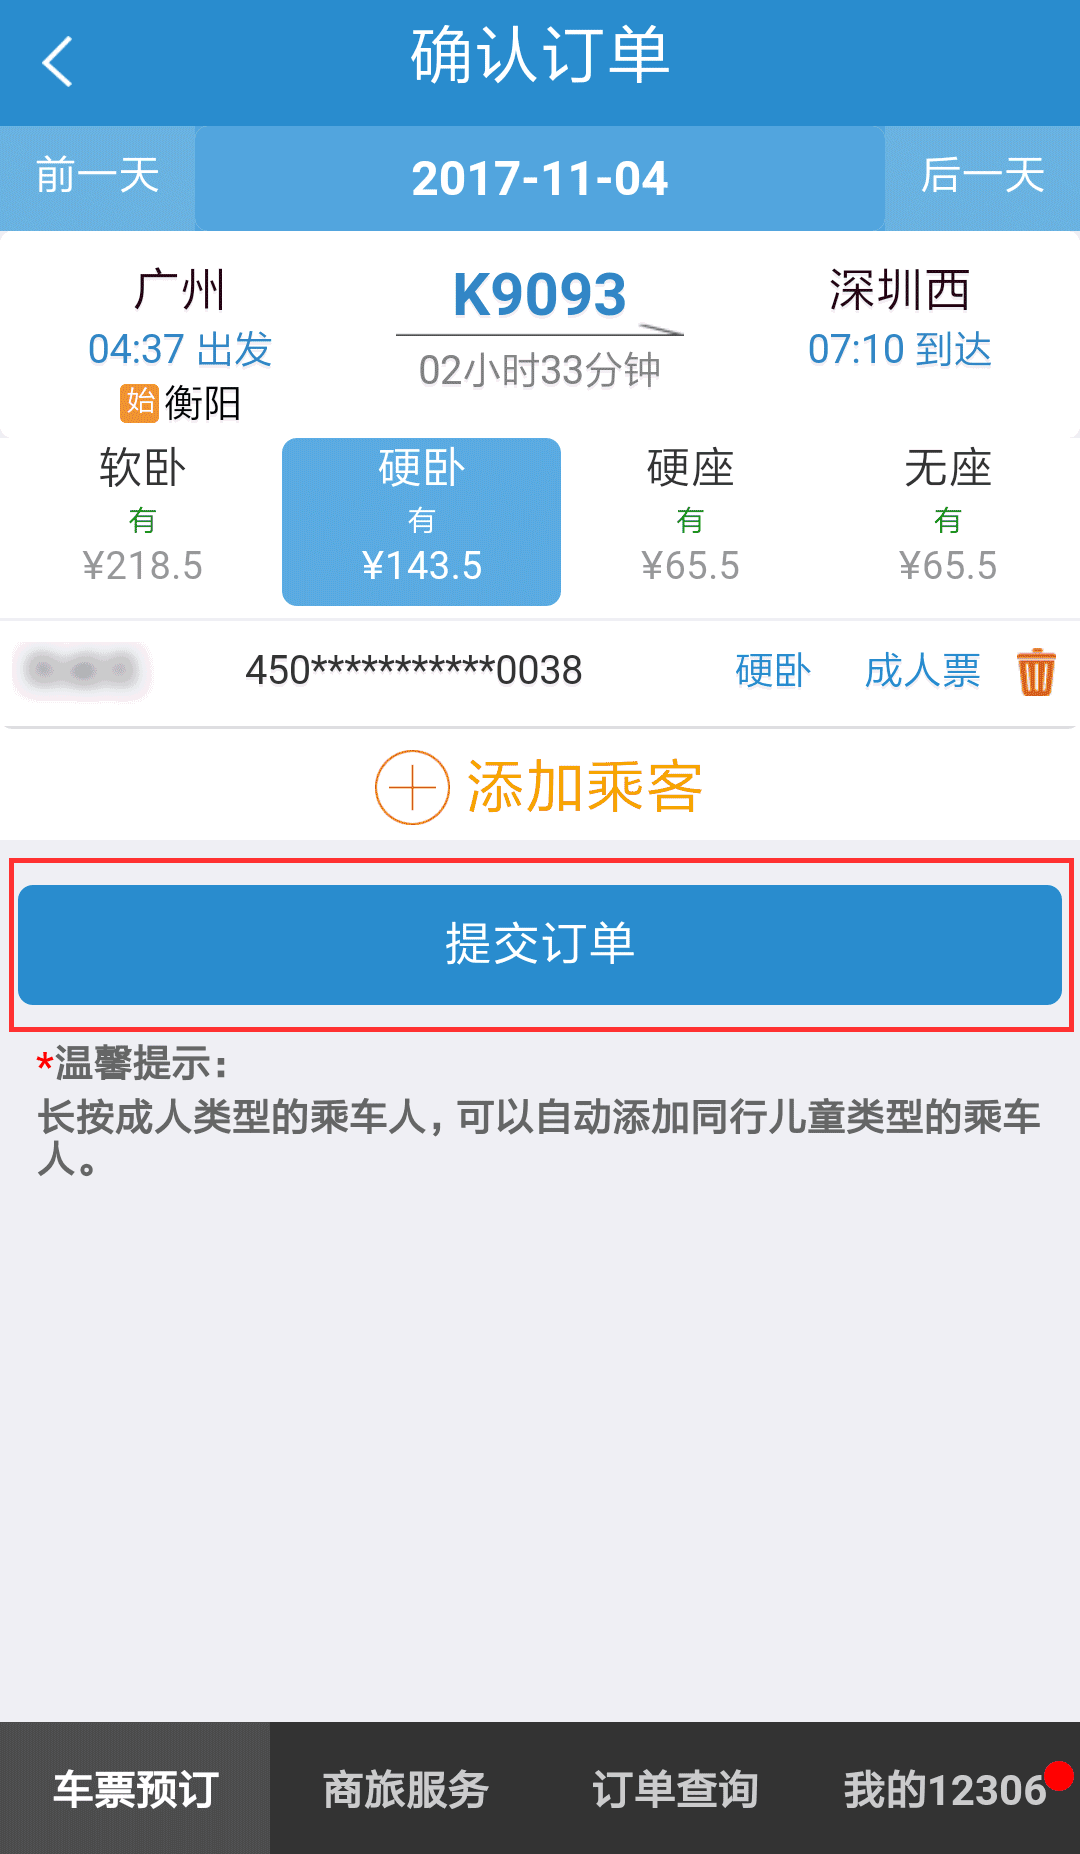 网购火车票可使用微信支付 app版 在手机12306官方app选择车票预订,选